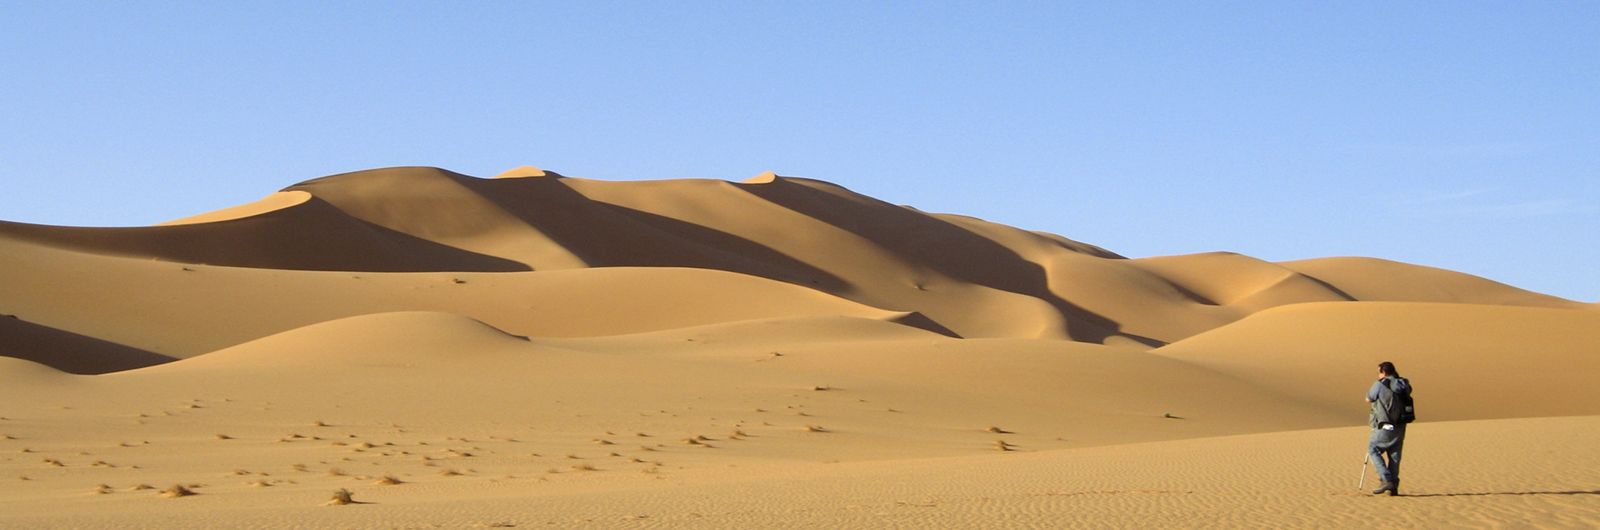 Egipto. Siwa la Perla del Sáhara